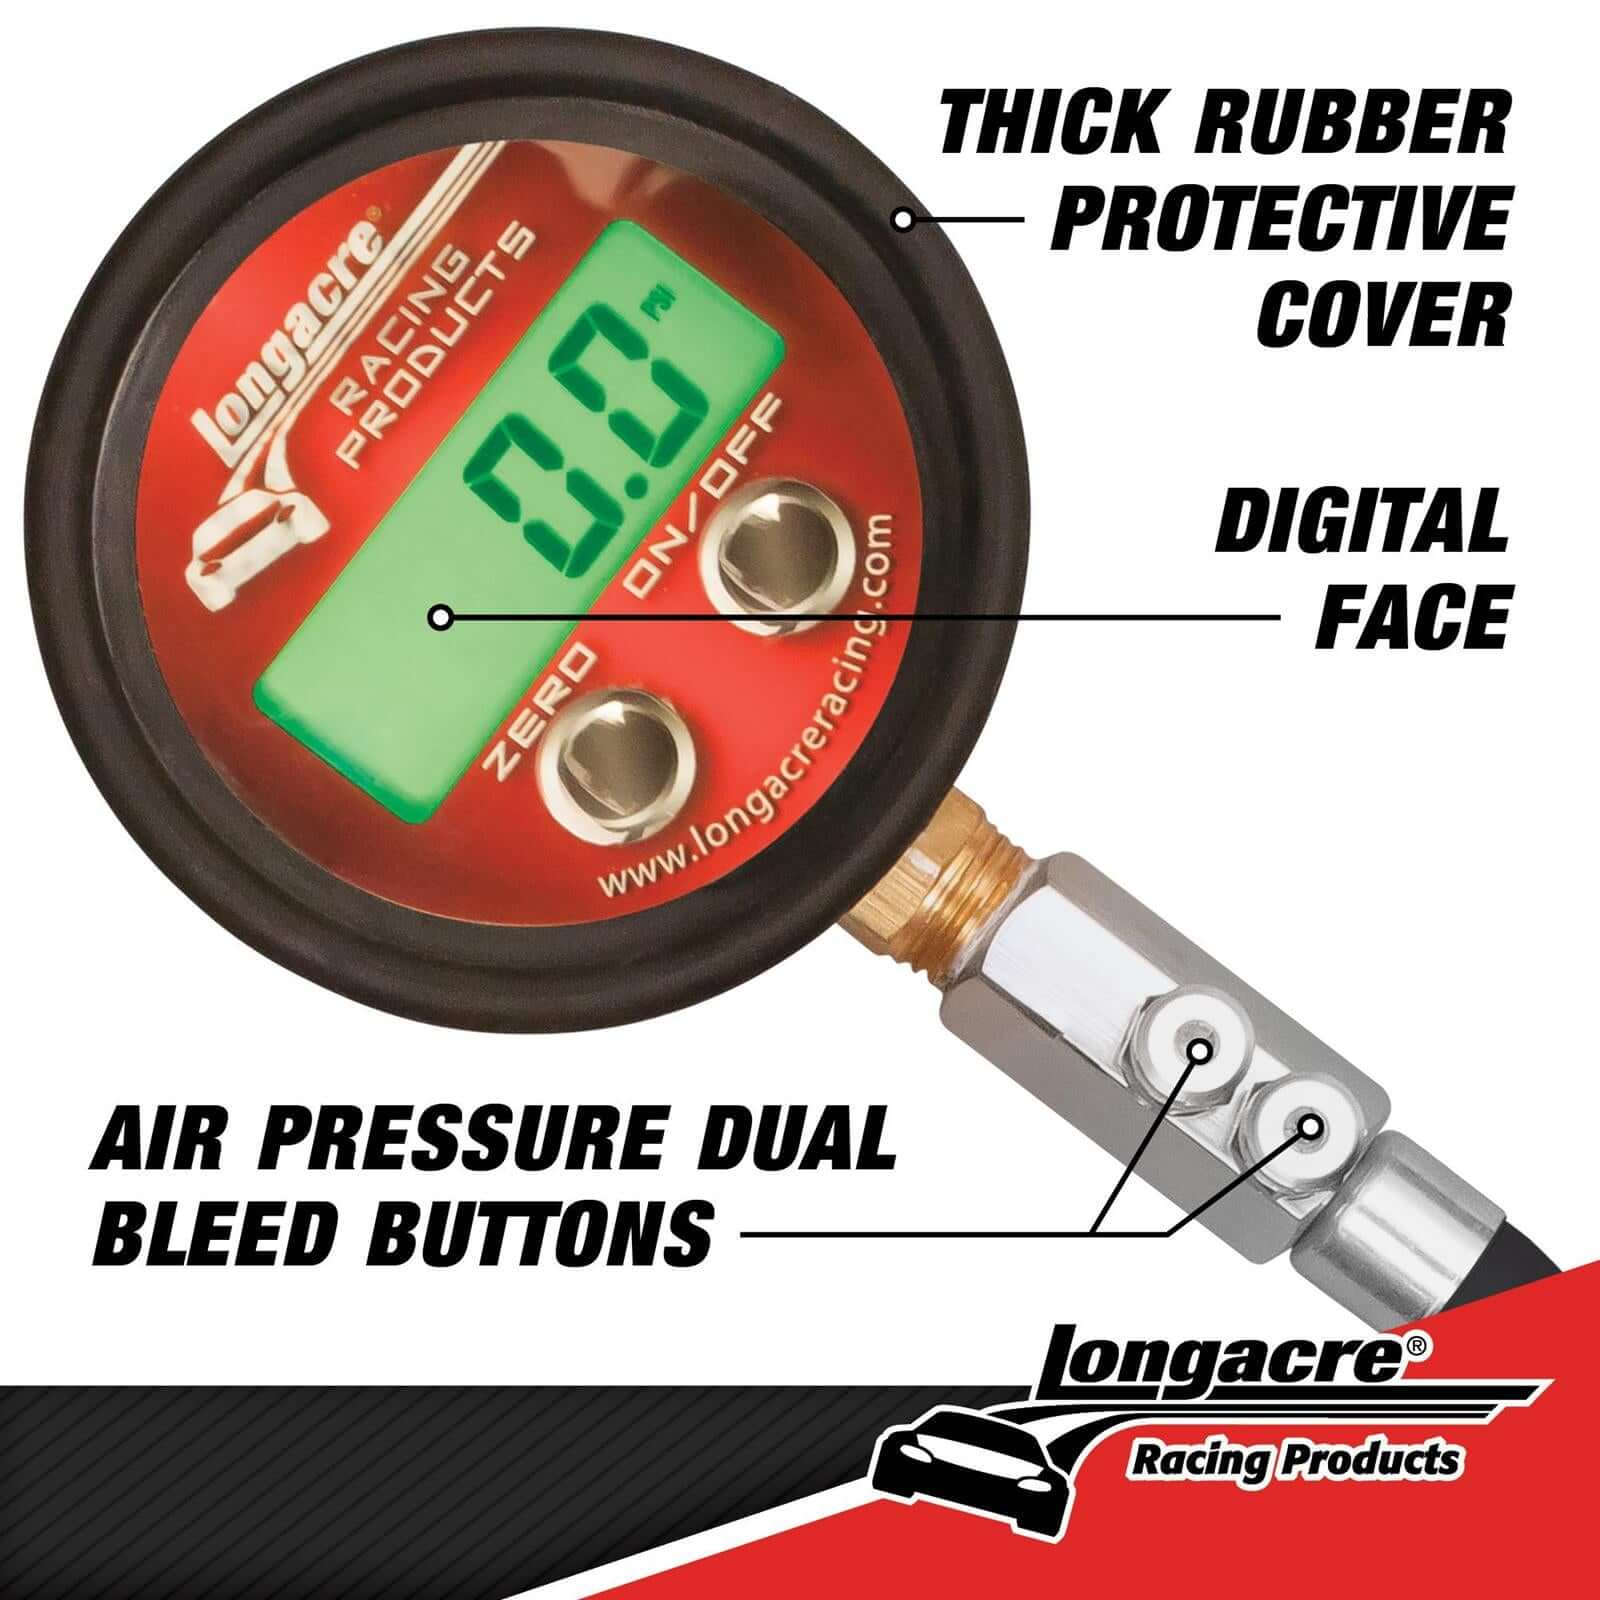 Digital Tire Pressure Gauge - $137.99